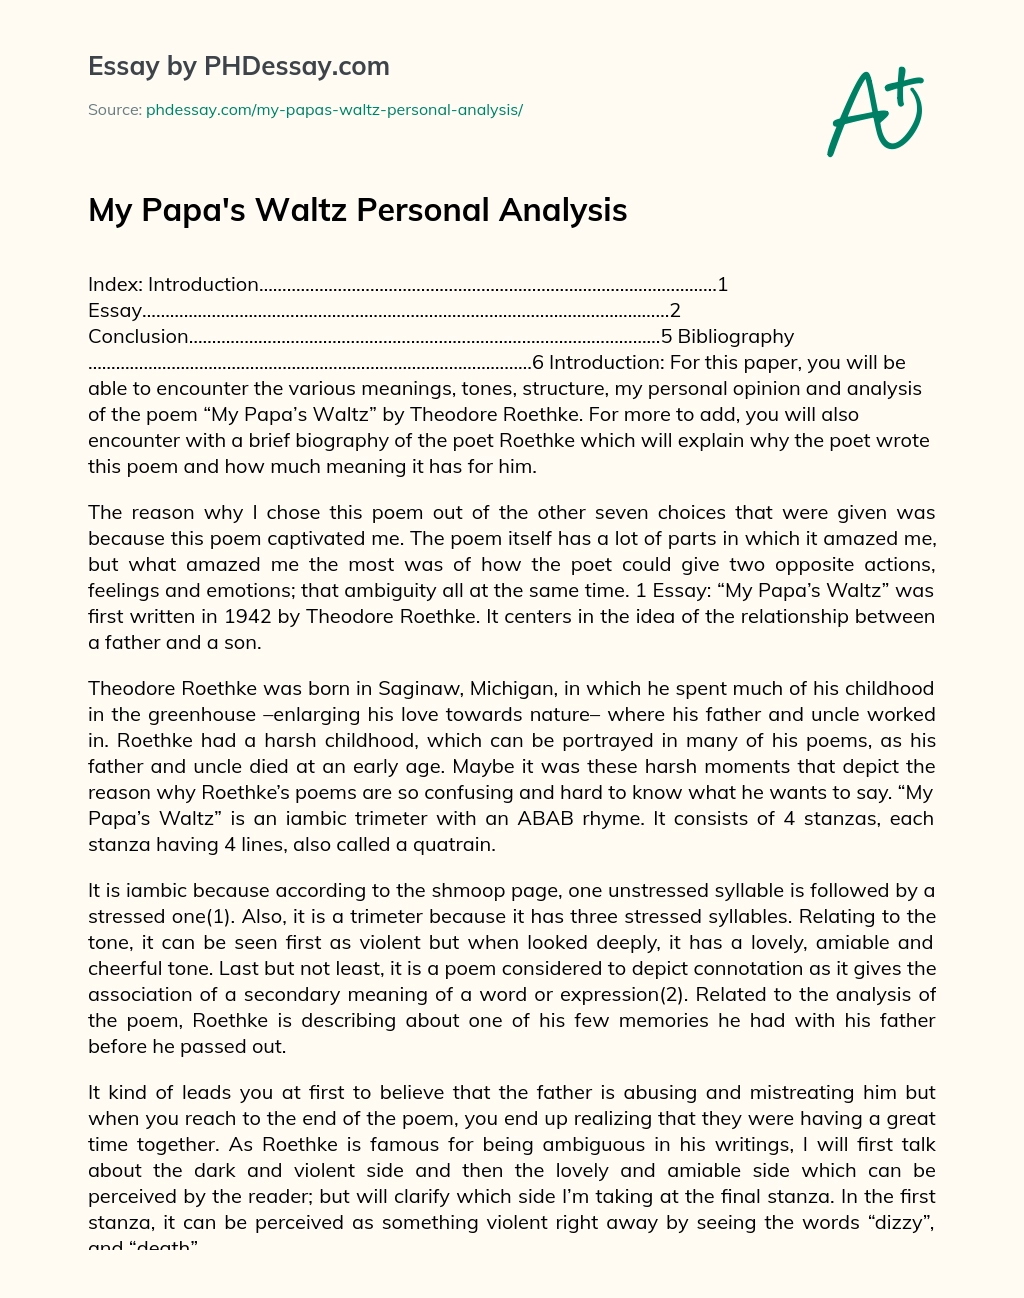 My Papa’s Waltz Personal Analysis essay